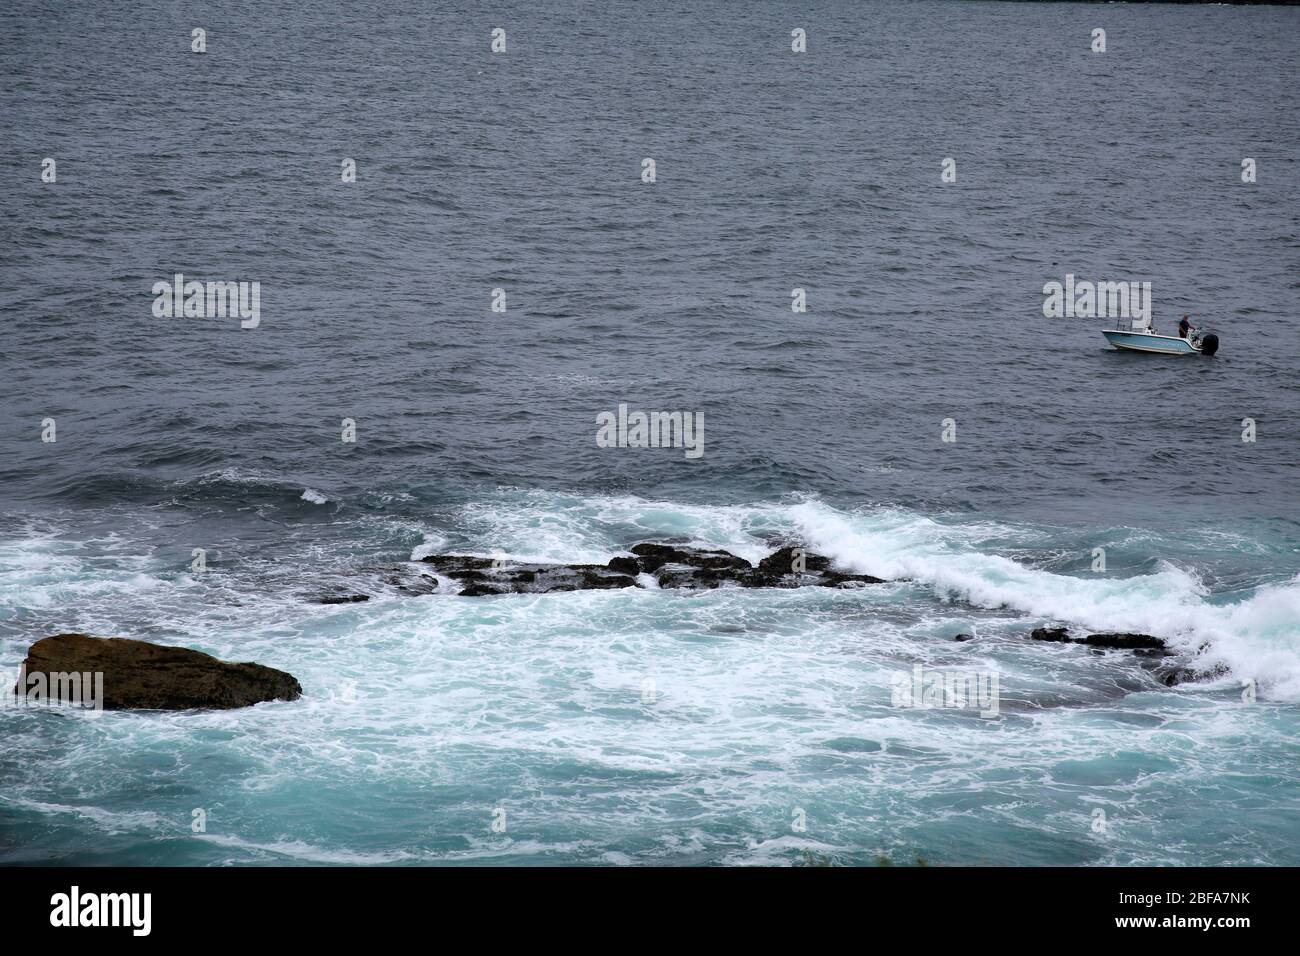 Mare crash su rocce, Watson's Bay, NSW, Australia Foto Stock